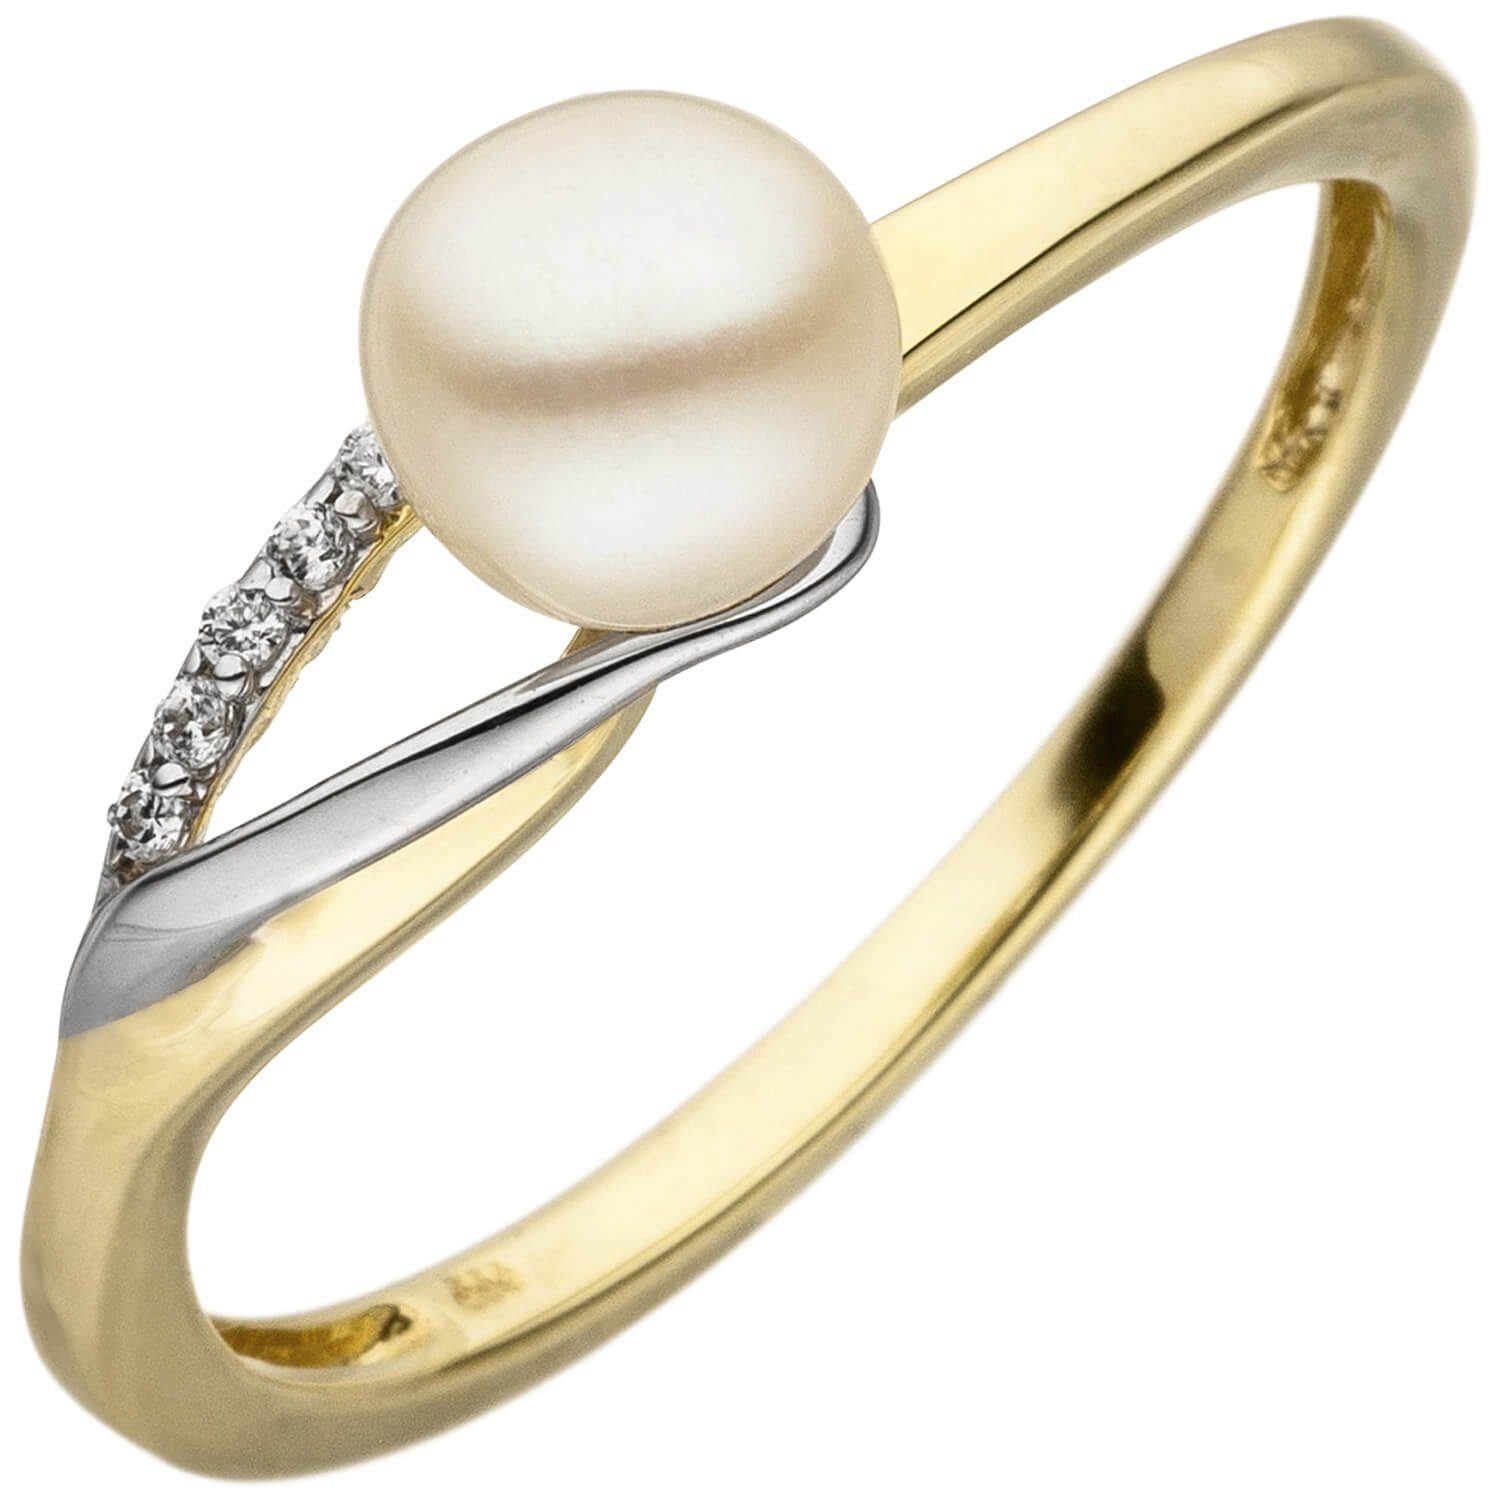 Schmuck Krone Fingerring Ring mit Süßwasser-Perle weiß & 6 Zirkonia, 333 Gold gelb/weiß bicolor Damen, Gold 333